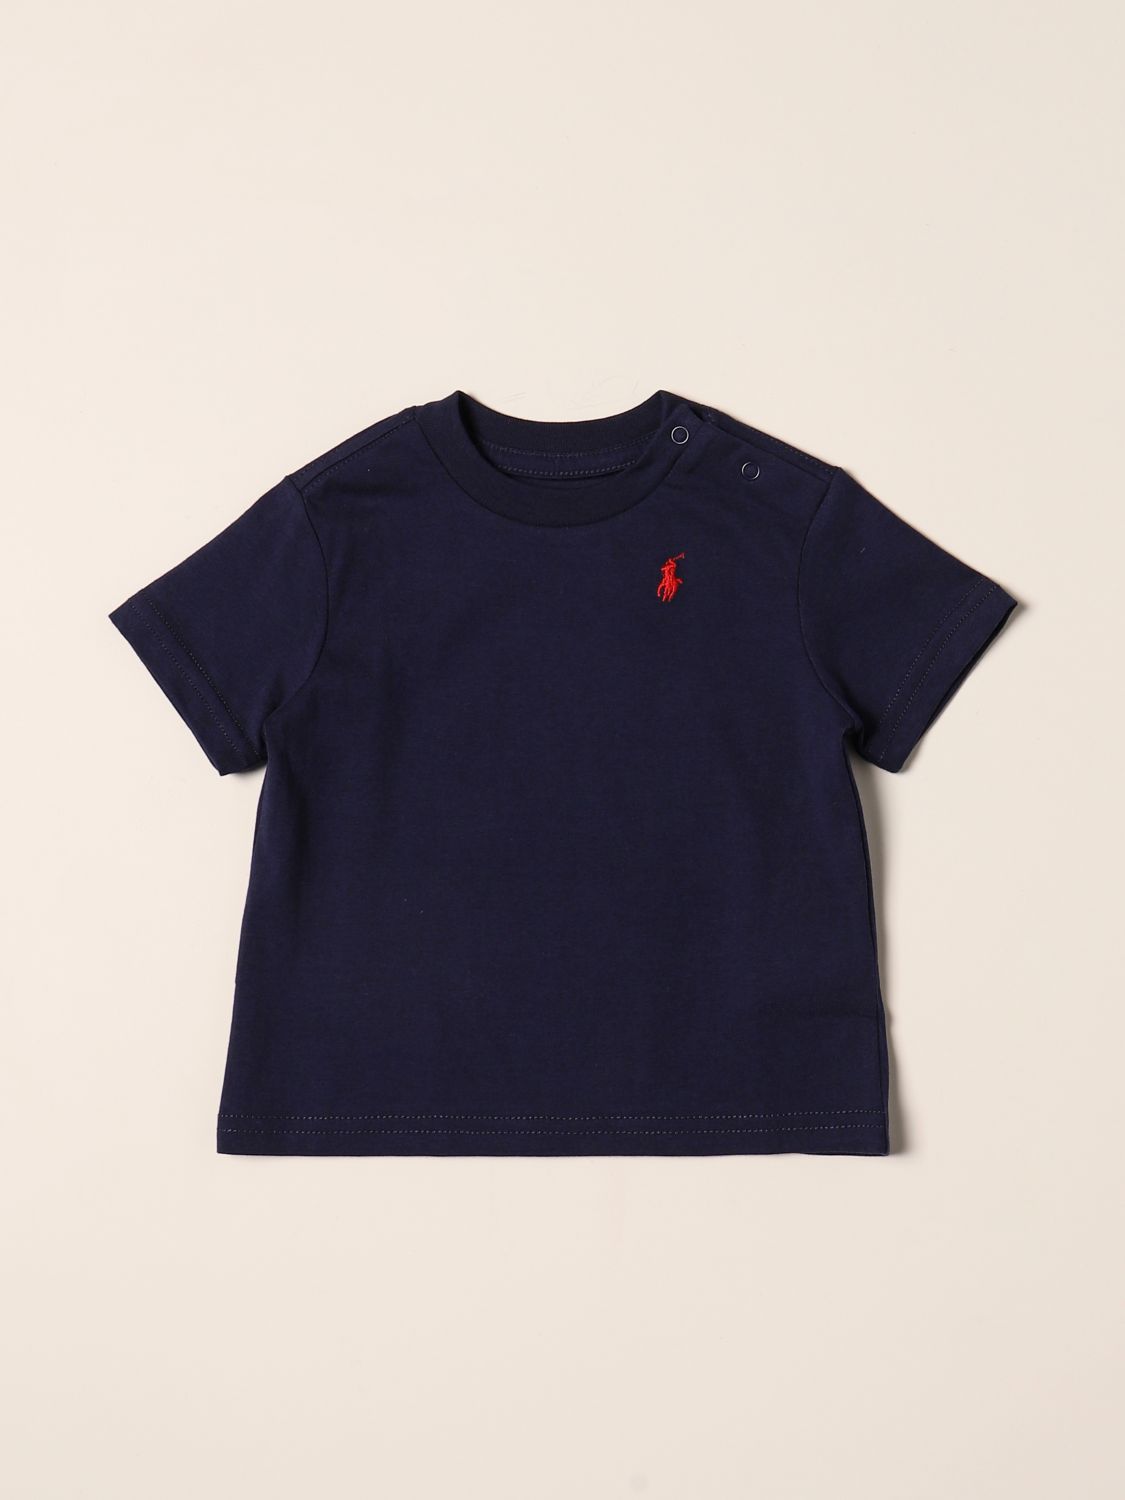 Tシャツ ポロラルフローレン: Tシャツ Polo Ralph Lauren 幼児 ネイビー 1